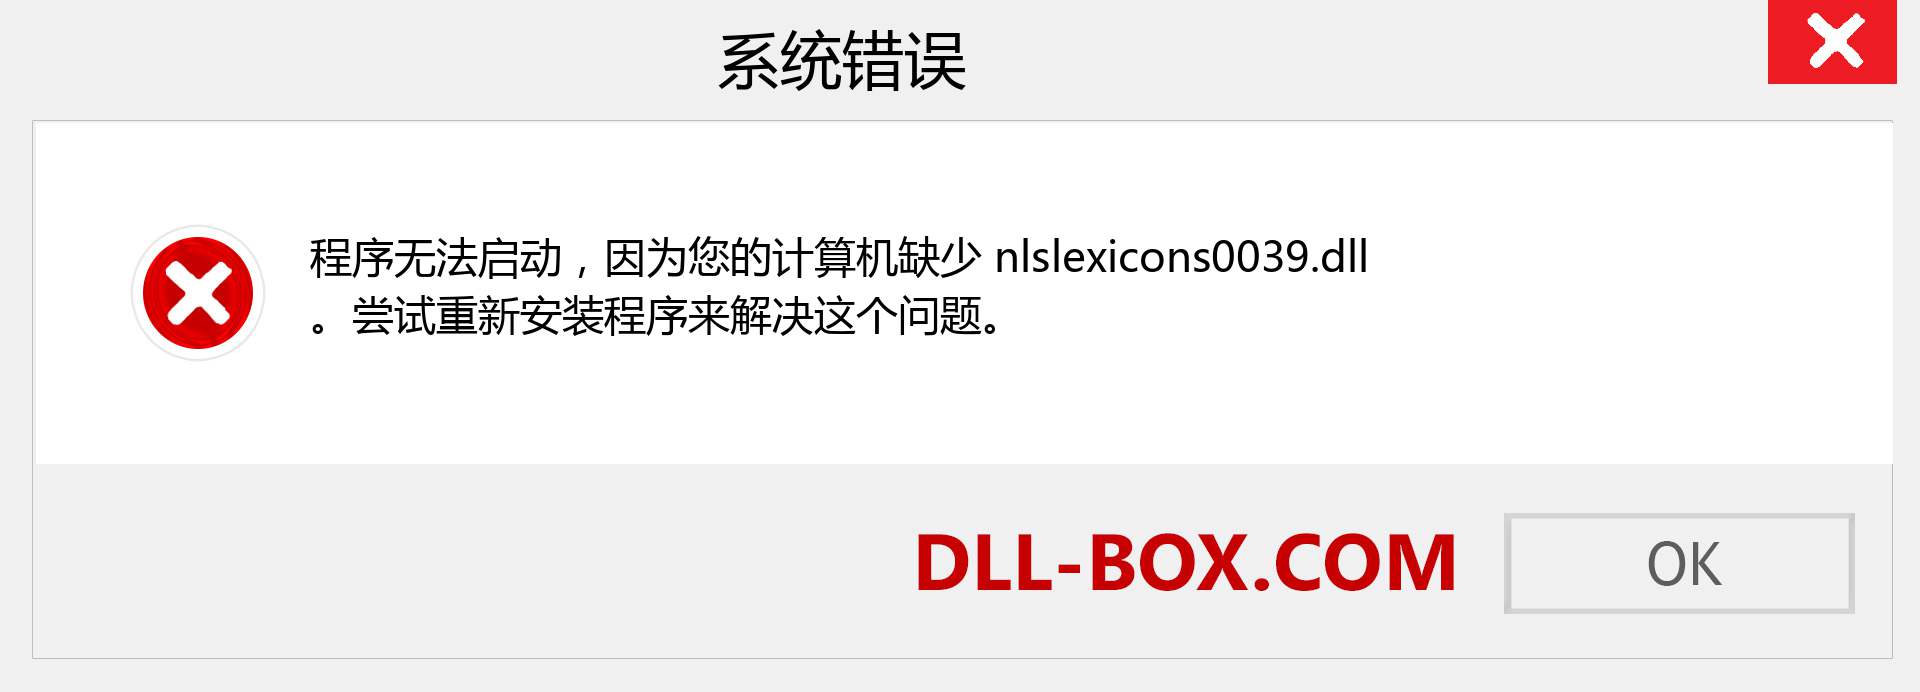 nlslexicons0039.dll 文件丢失？。 适用于 Windows 7、8、10 的下载 - 修复 Windows、照片、图像上的 nlslexicons0039 dll 丢失错误